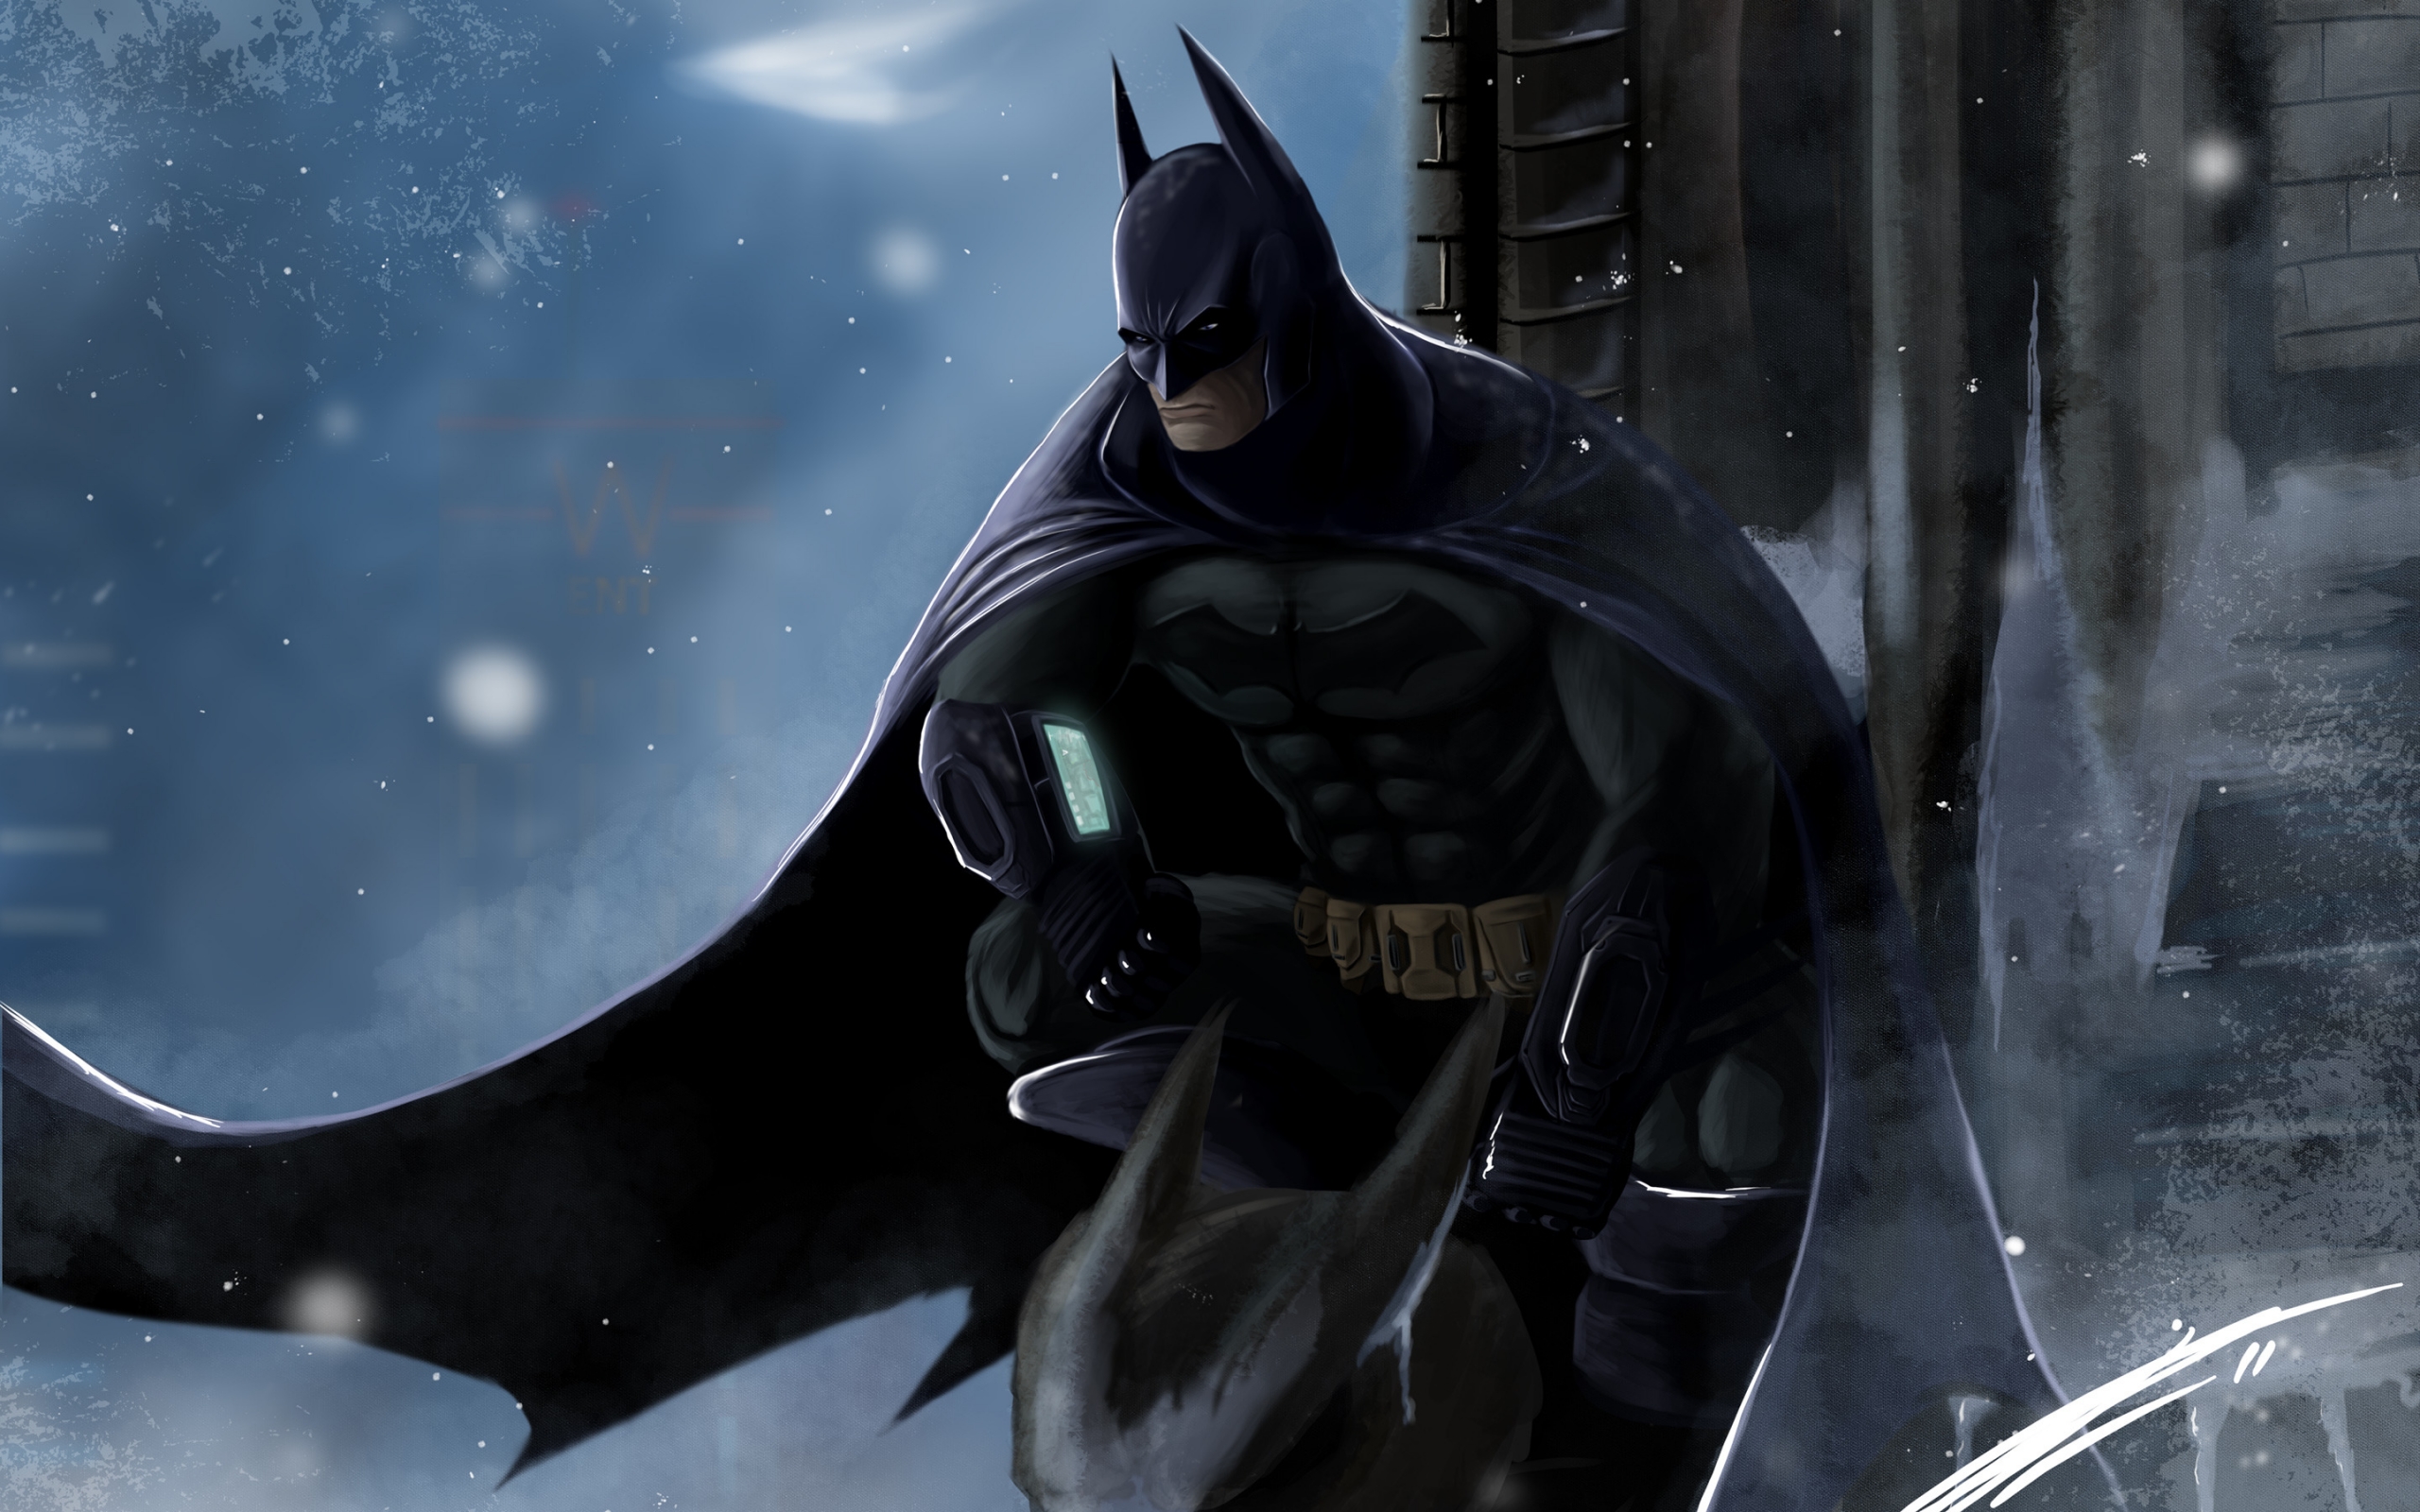 Batman Artwork for 2560 x 1600 widescreen resolution